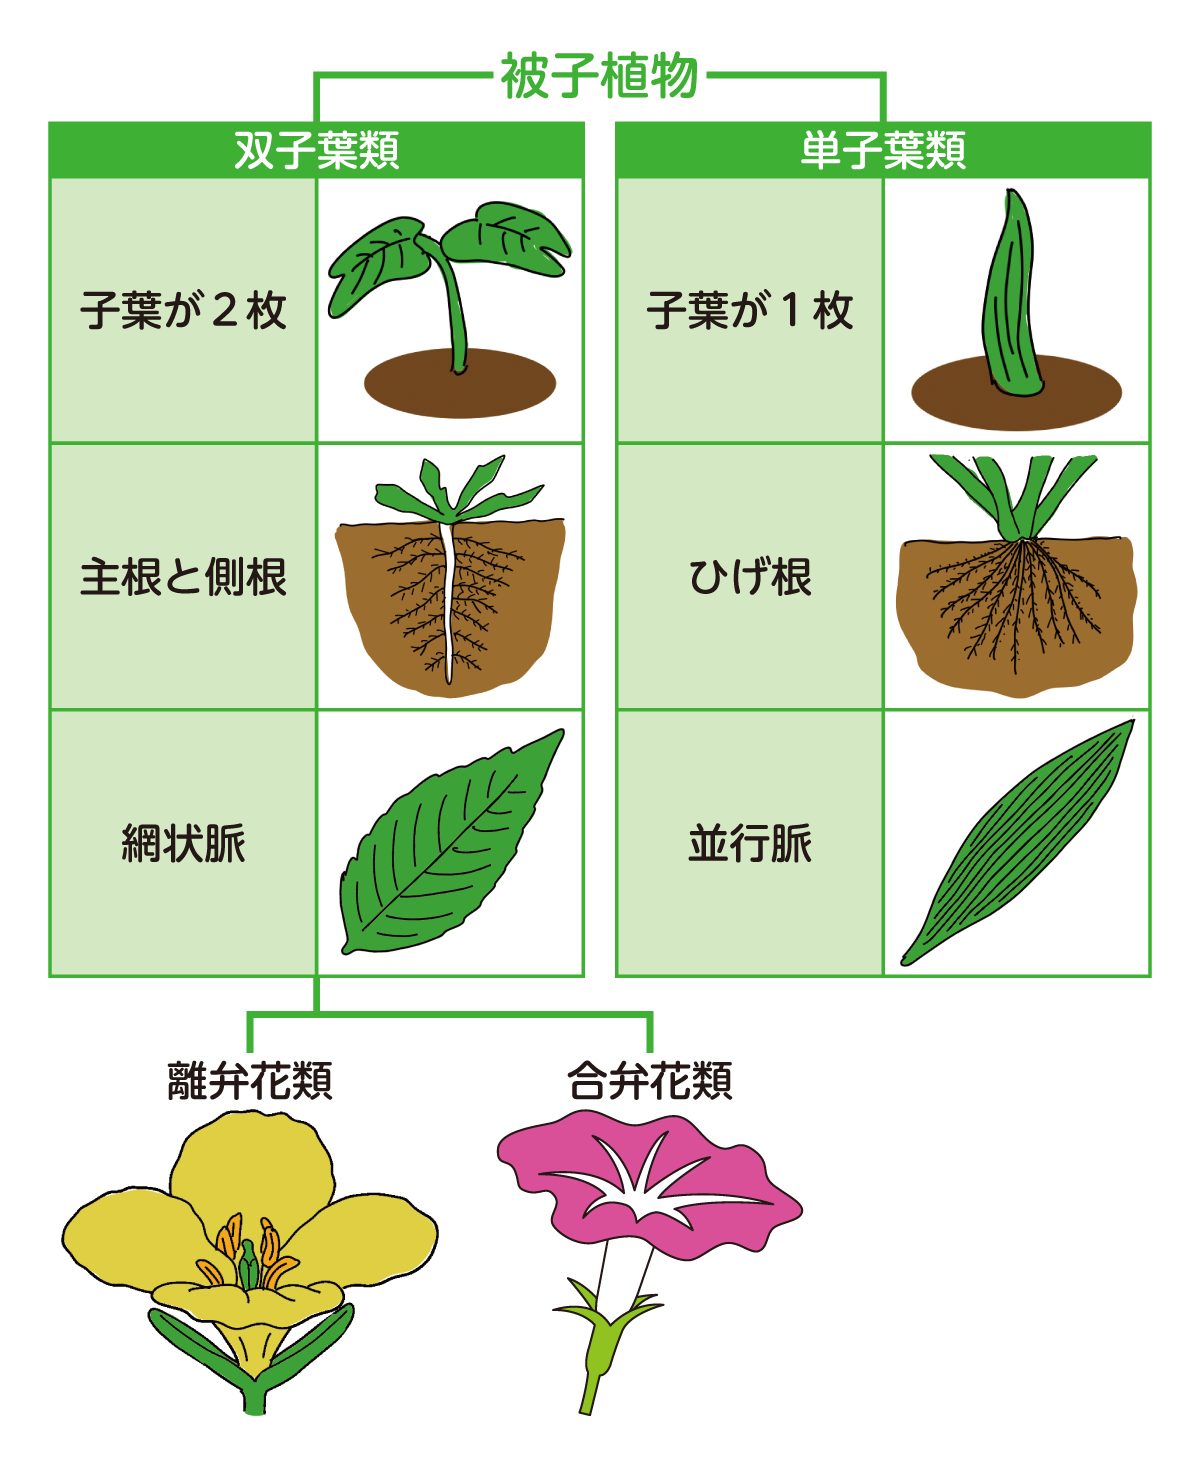 被子植物の分類図。合弁花・離弁花はともに被子植物の双子葉類に属する。